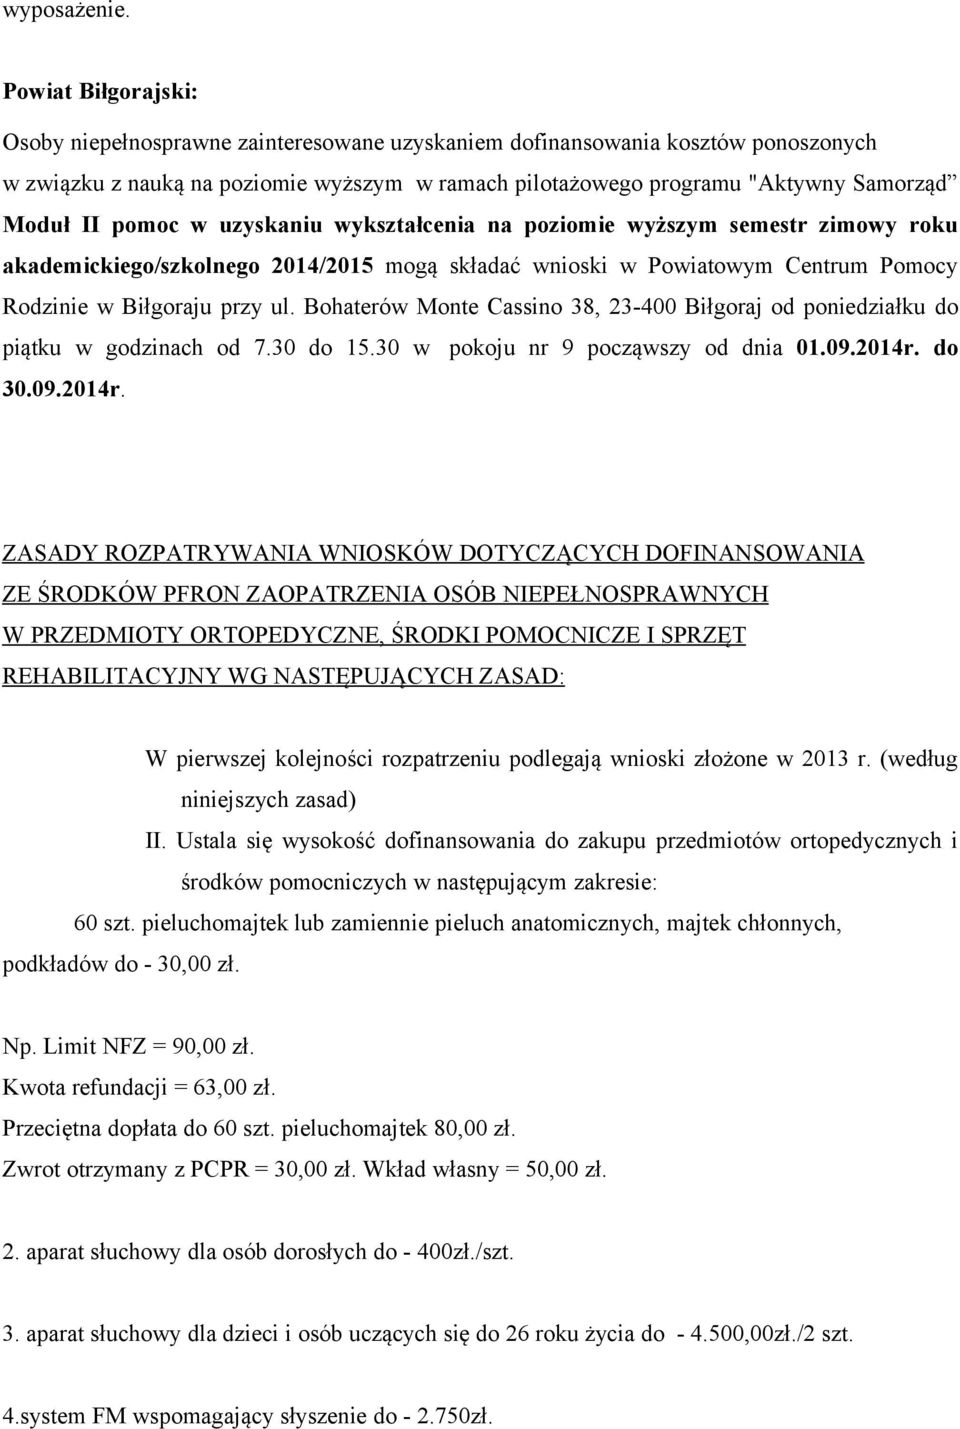 pomoc w uzyskaniu wykształcenia na poziomie wyższym semestr zimowy roku akademickiego/szkolnego 2014/2015 mogą składać wnioski w Powiatowym Centrum Pomocy Rodzinie w Biłgoraju przy ul.